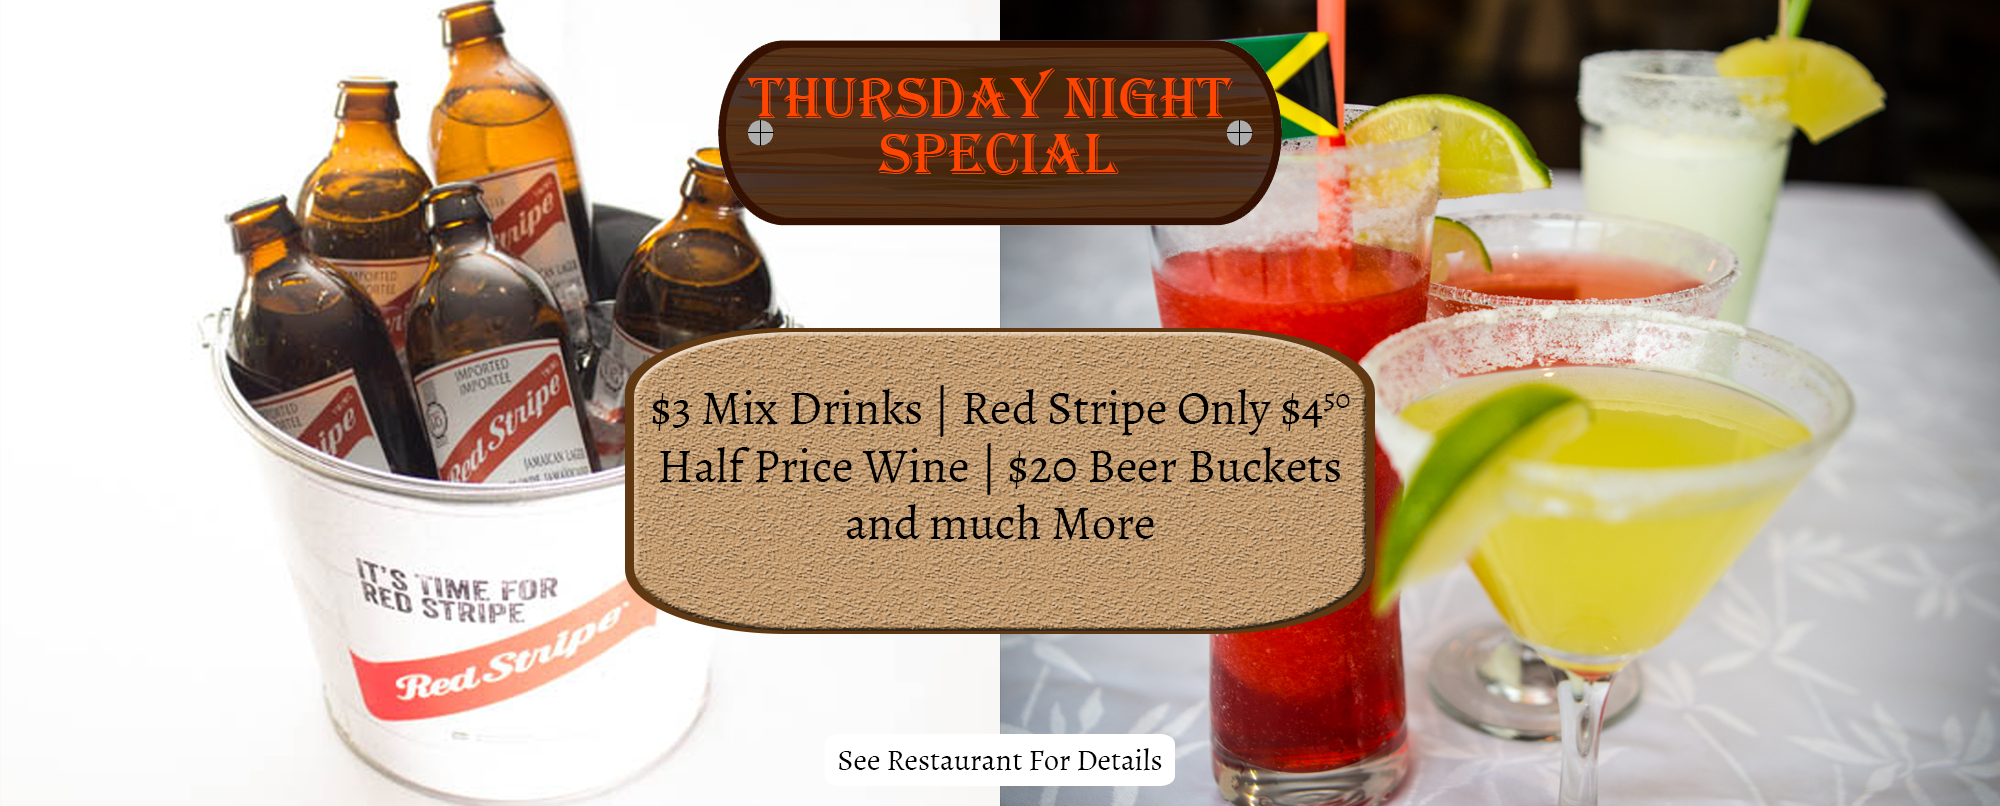 Thursday Night Specials - Bar Night - Thirsty Thursday